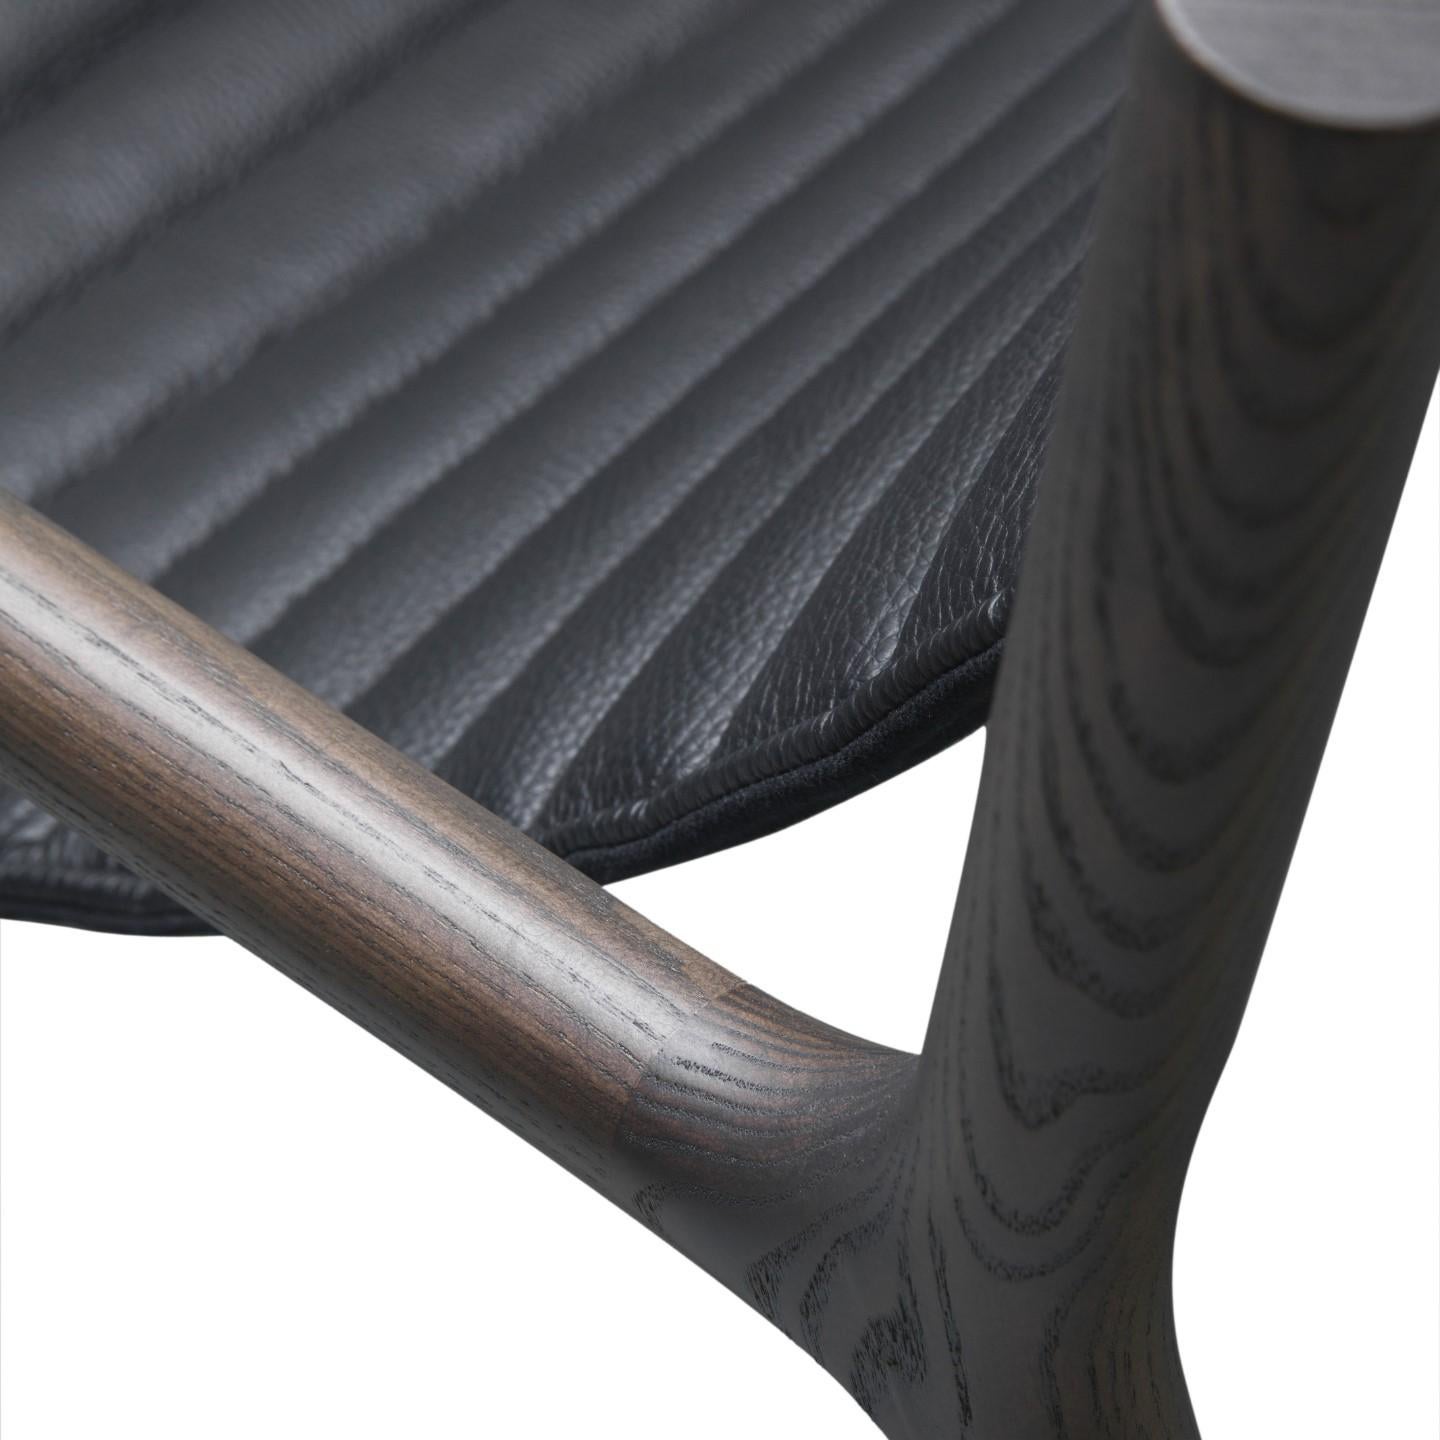 Fauteuil bas Joyce de style contemporain en bois de frêne avec siège en cuir touffeté et embouts en laiton.
Conçu par Libero Rutilo.
Dimension : L 69, L 82, H 69 cm.